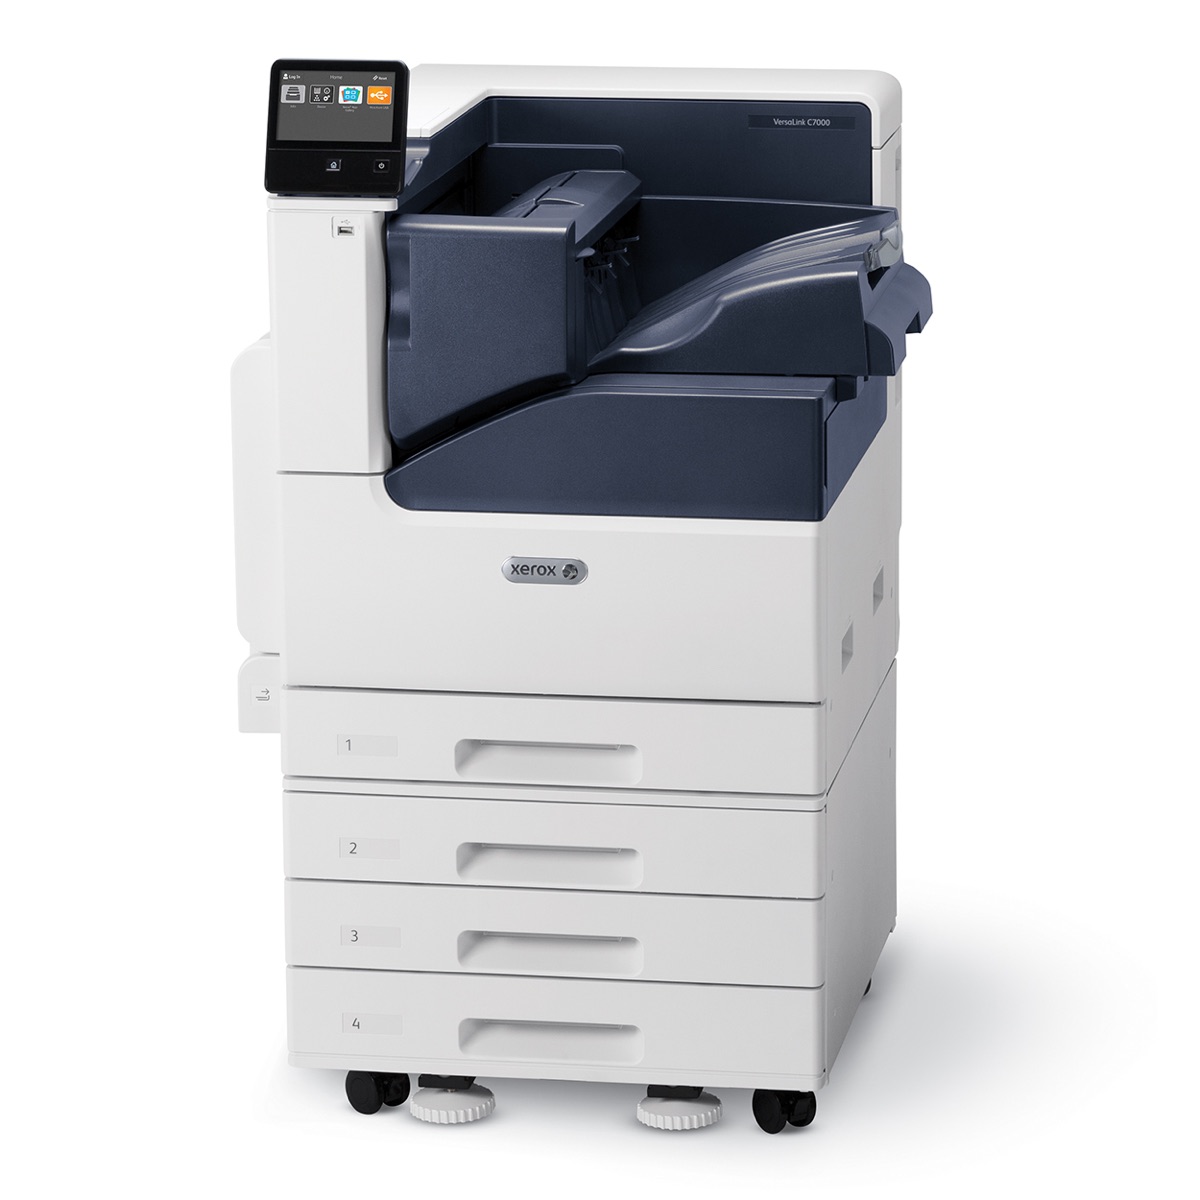 Xerox VersaLink C7000DN Printer